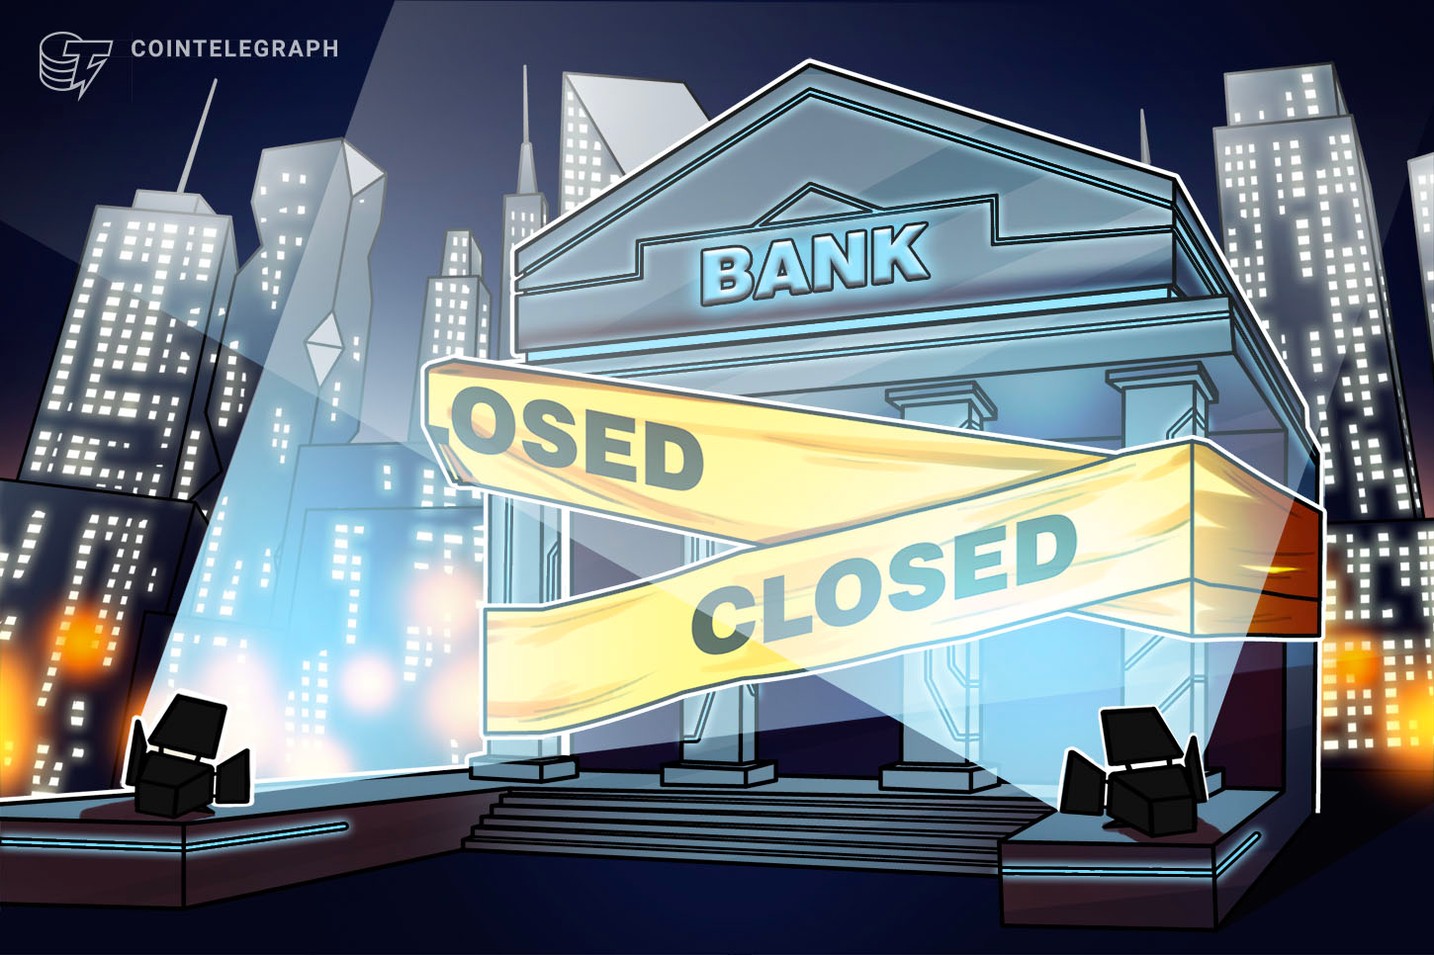 US regulators shut down Signature Bank despite ‘no insolvency’: Report